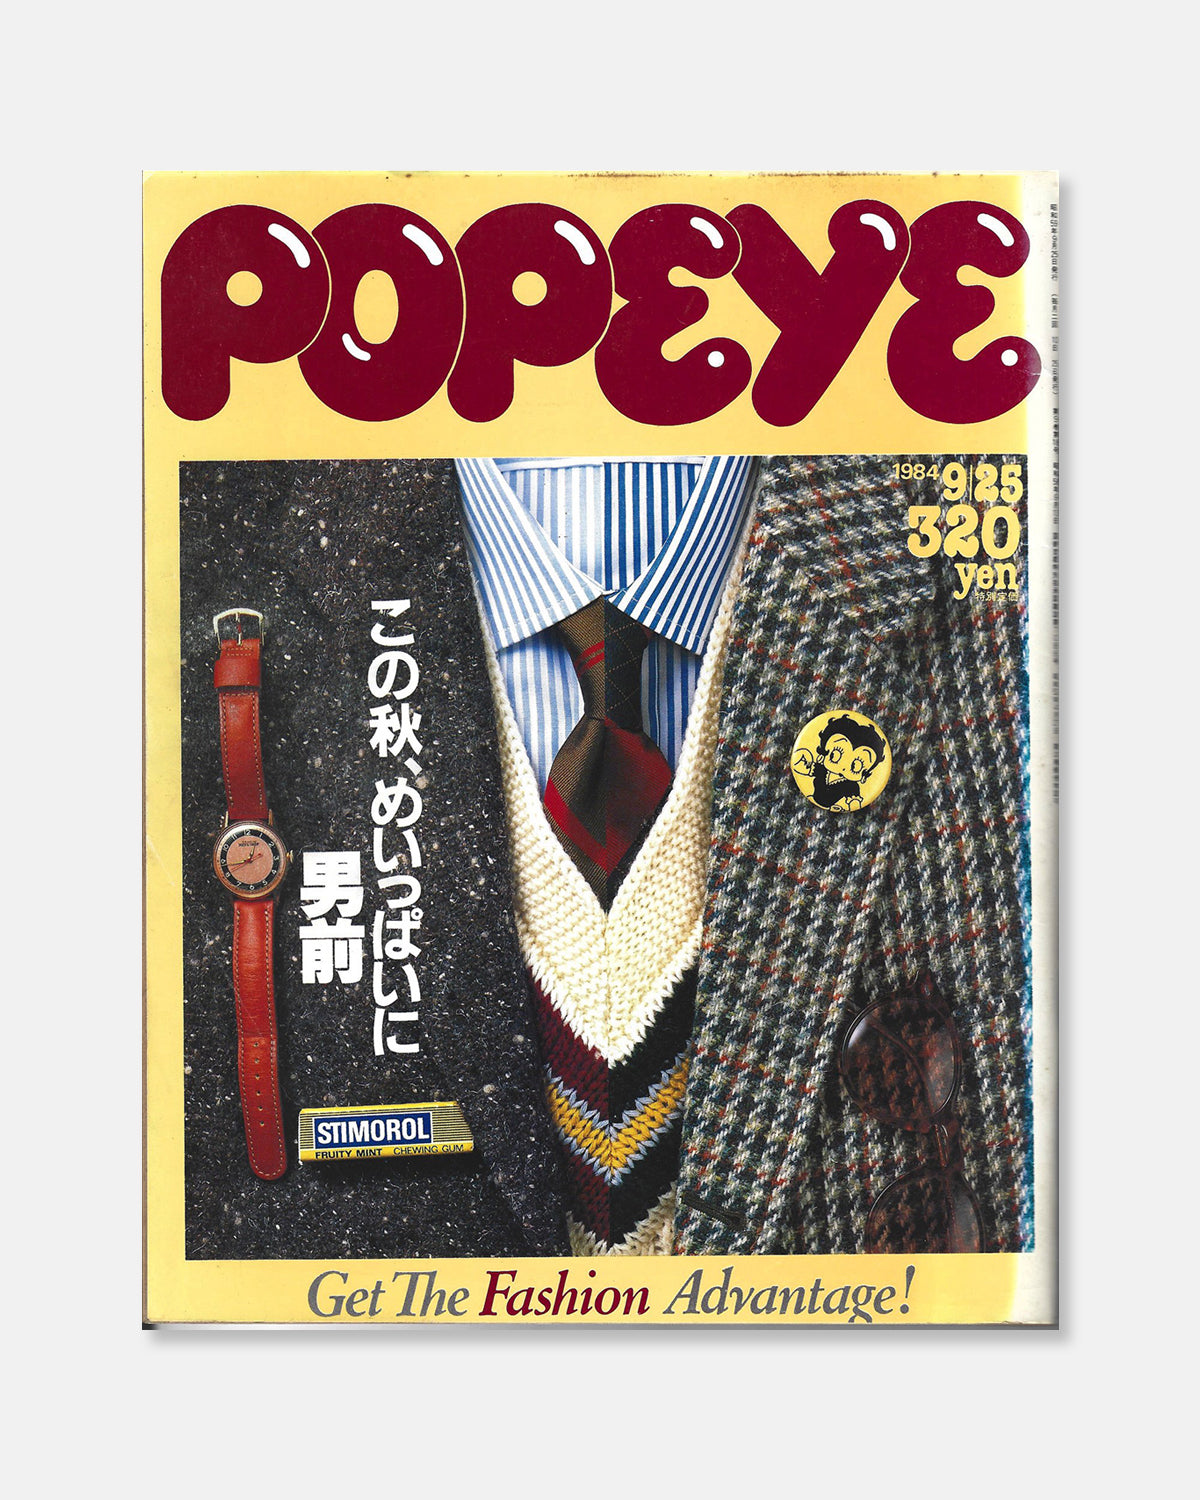 Popeye Magazine September 1984 (#183)